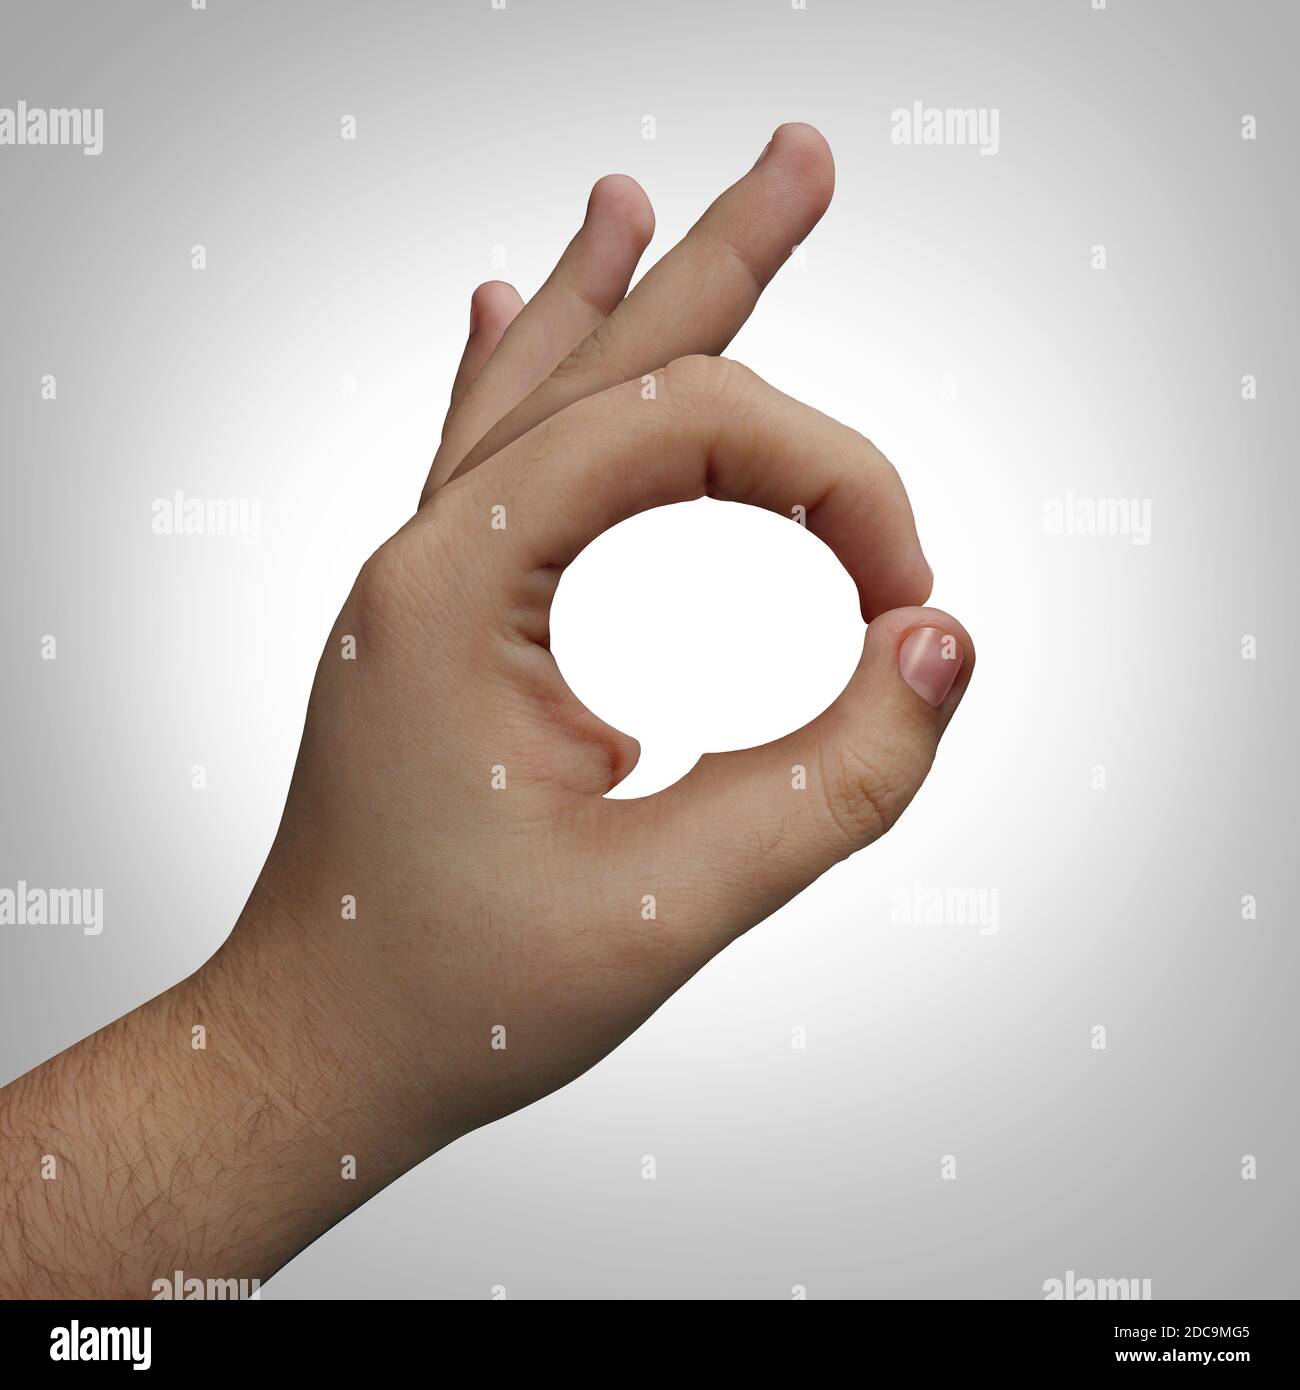 Concept de langage corporel et communication non verbale ou non verbale avec une main faisant un geste en forme de mot ou de bulle de parole ou de culture sourde. Banque D'Images